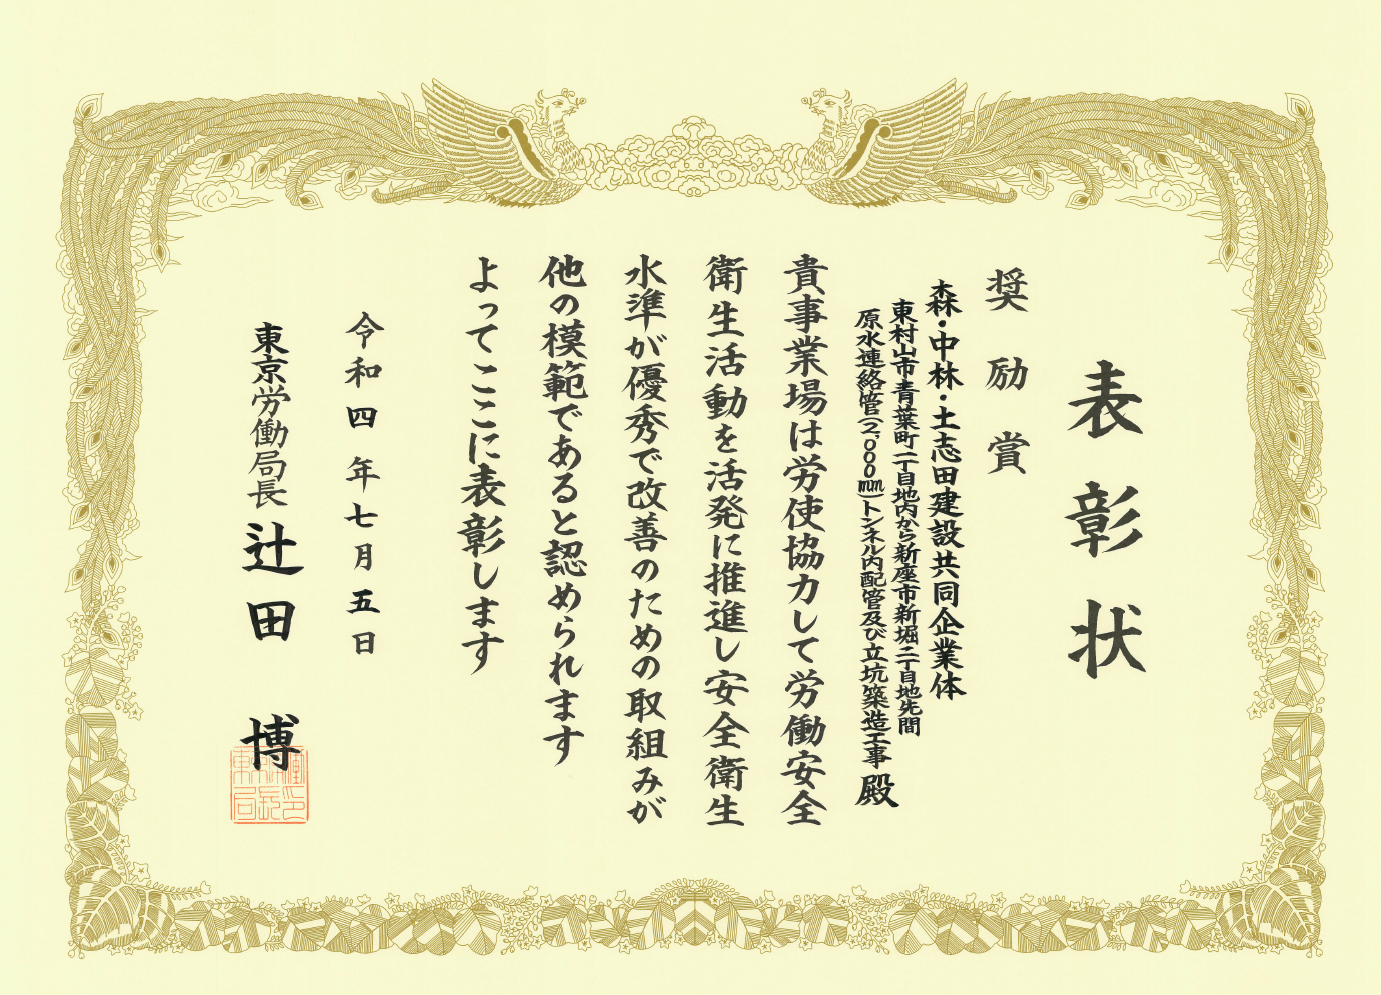 東京労働局より「安全衛生に係る表彰」をいただきました。